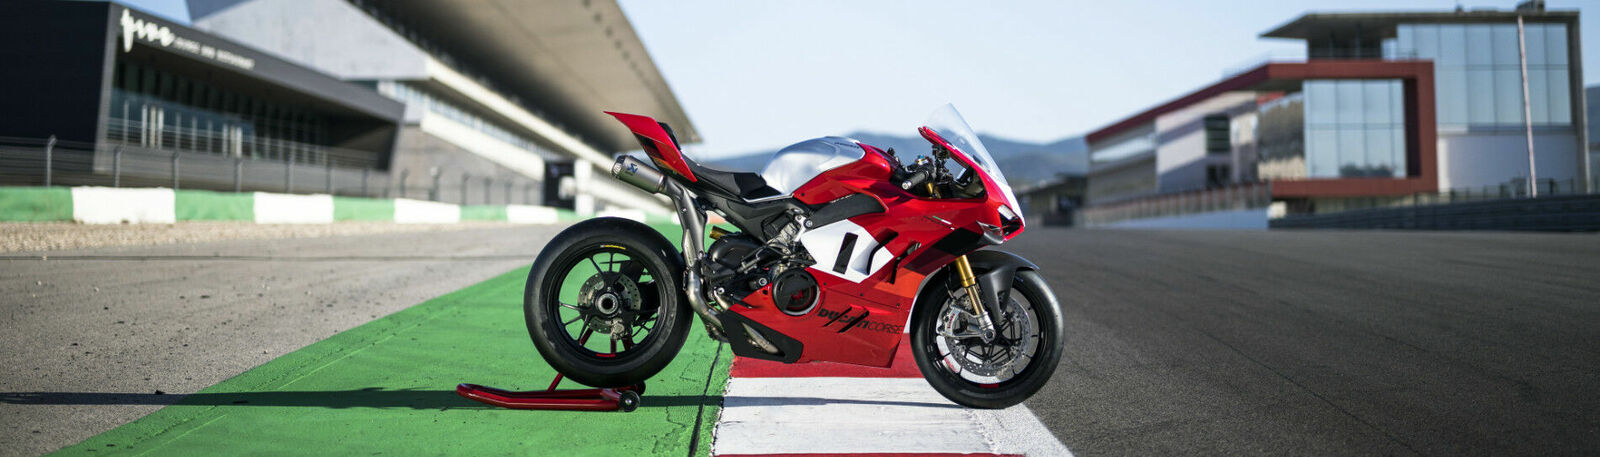 rote Ducati, die am rand einer Rennbahn steht